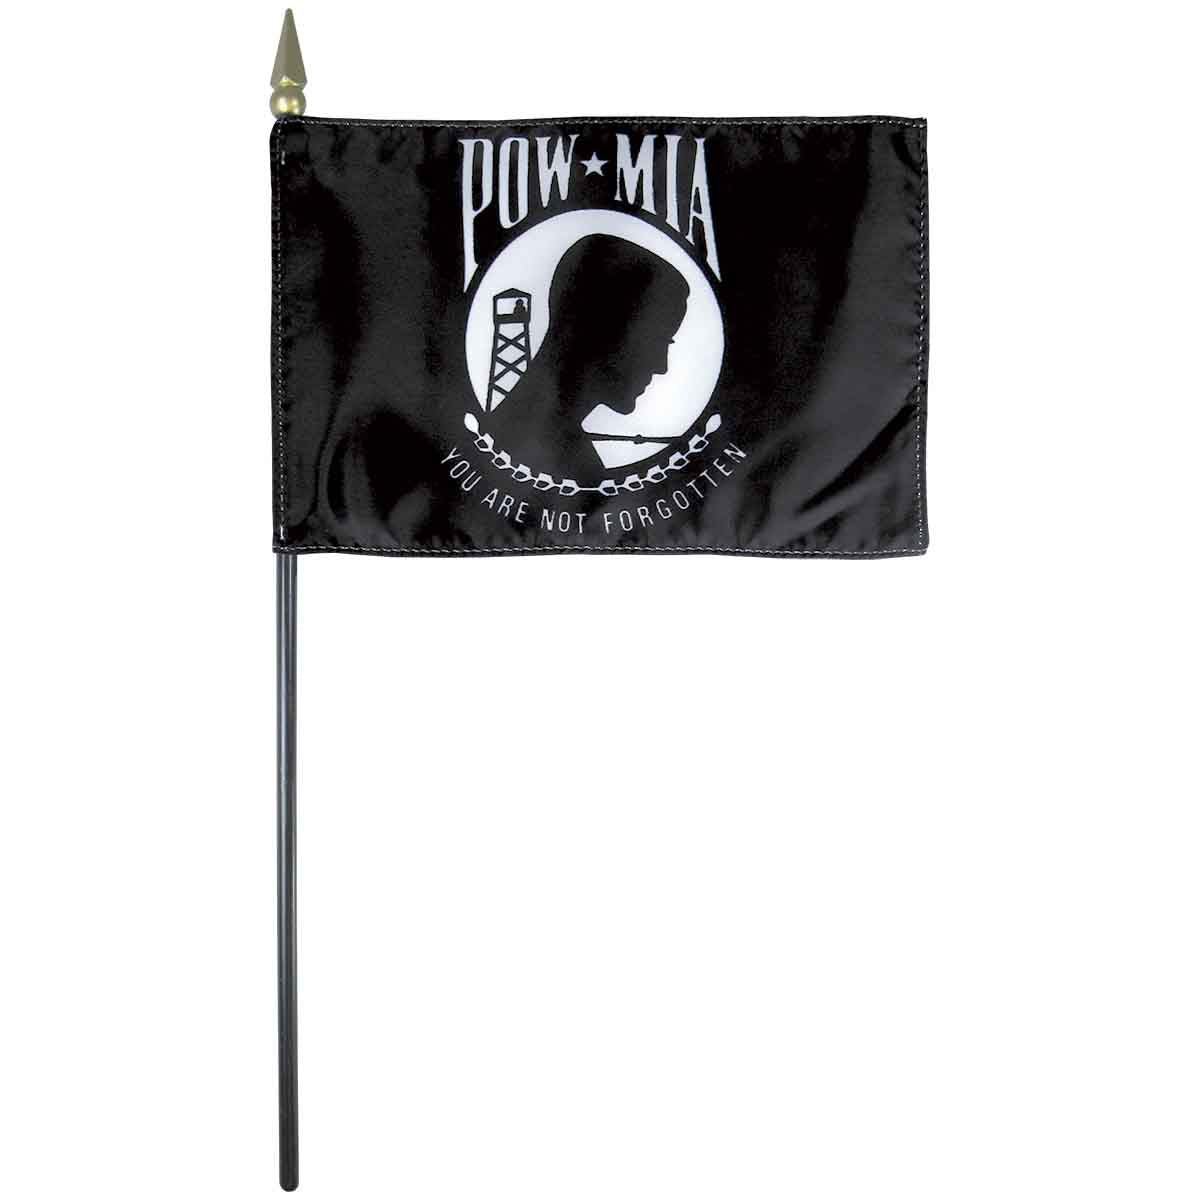 Mounted POW-MIA Flag